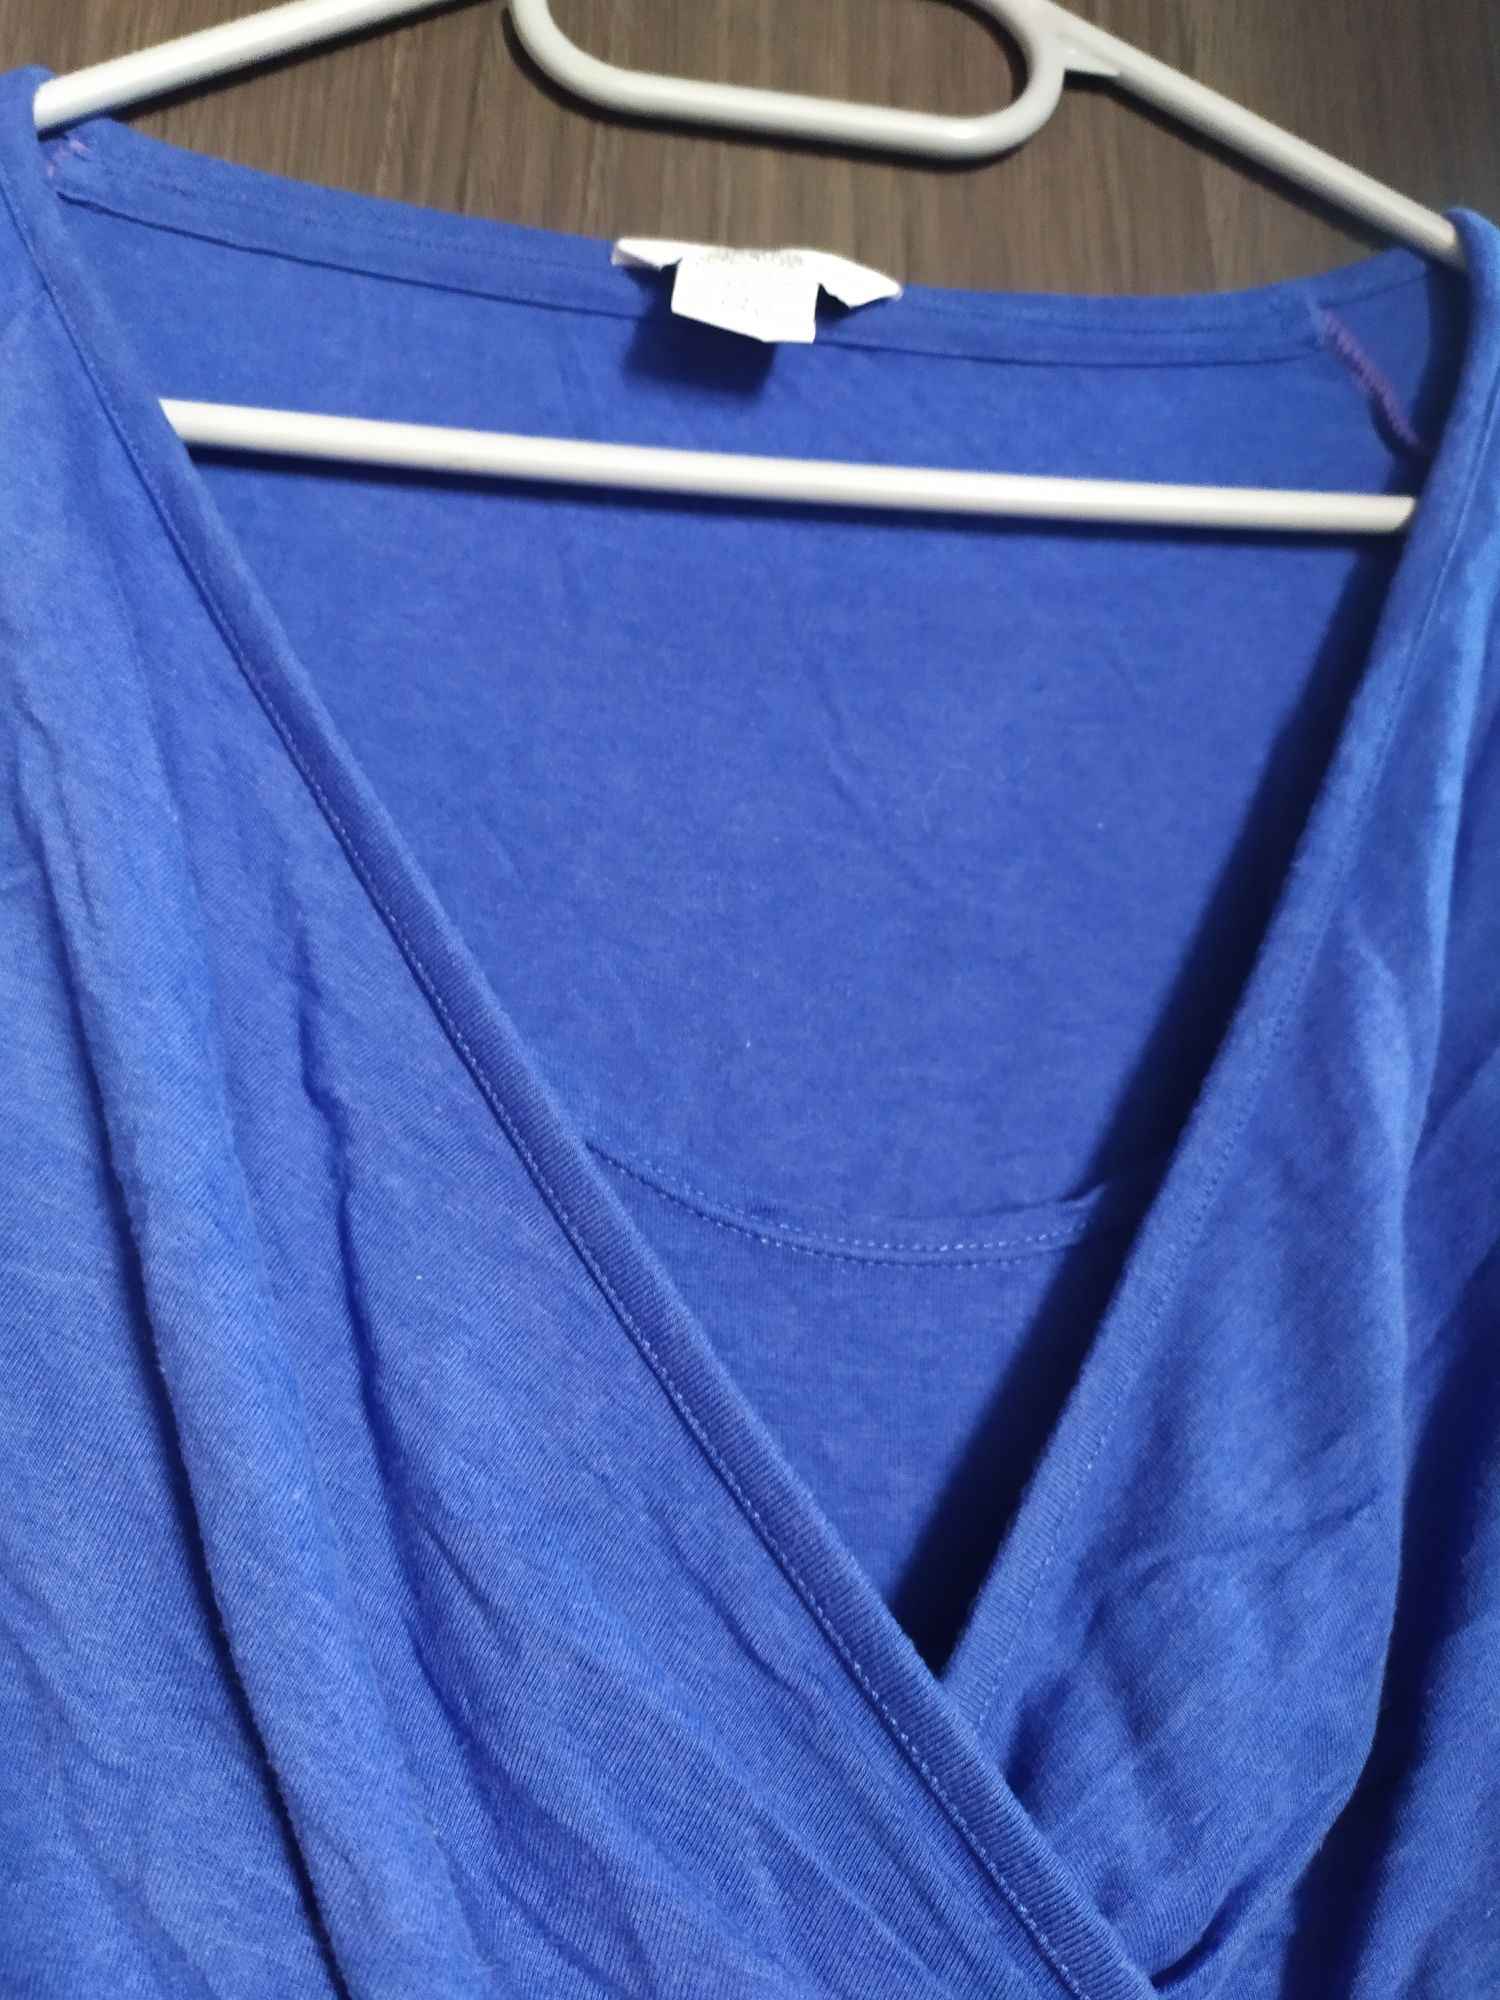 Tunika bluzka ciążowa niebieska rozmiar 40 długi rękaw